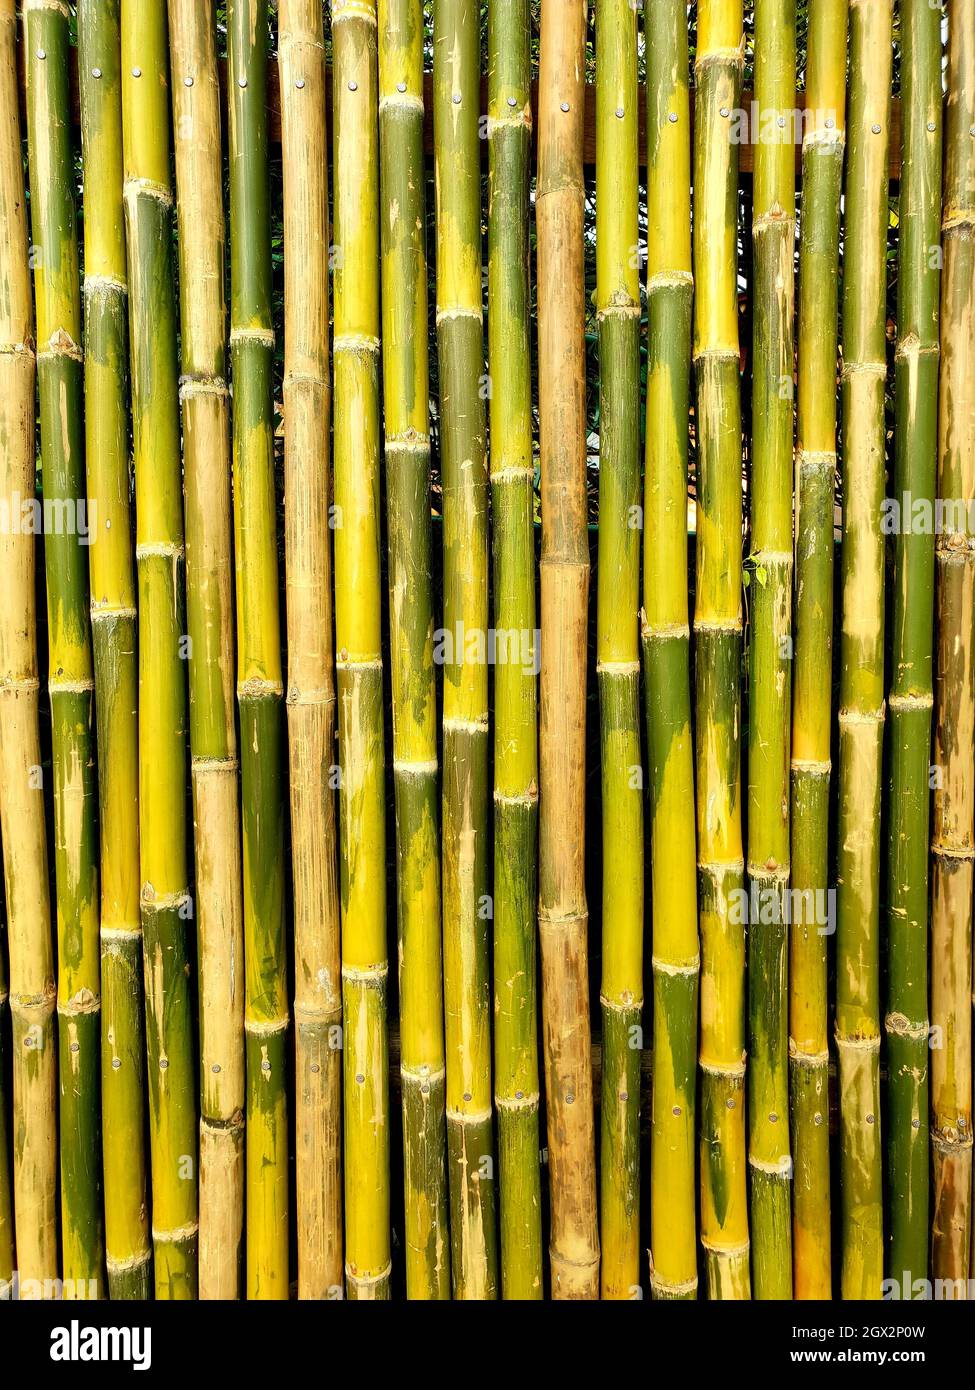 Wandmuster Aus Bambus. Schöne Bamboo Farbe Bamboo Wand schöne natürlich  aussehende Hintergrund Stockfotografie - Alamy